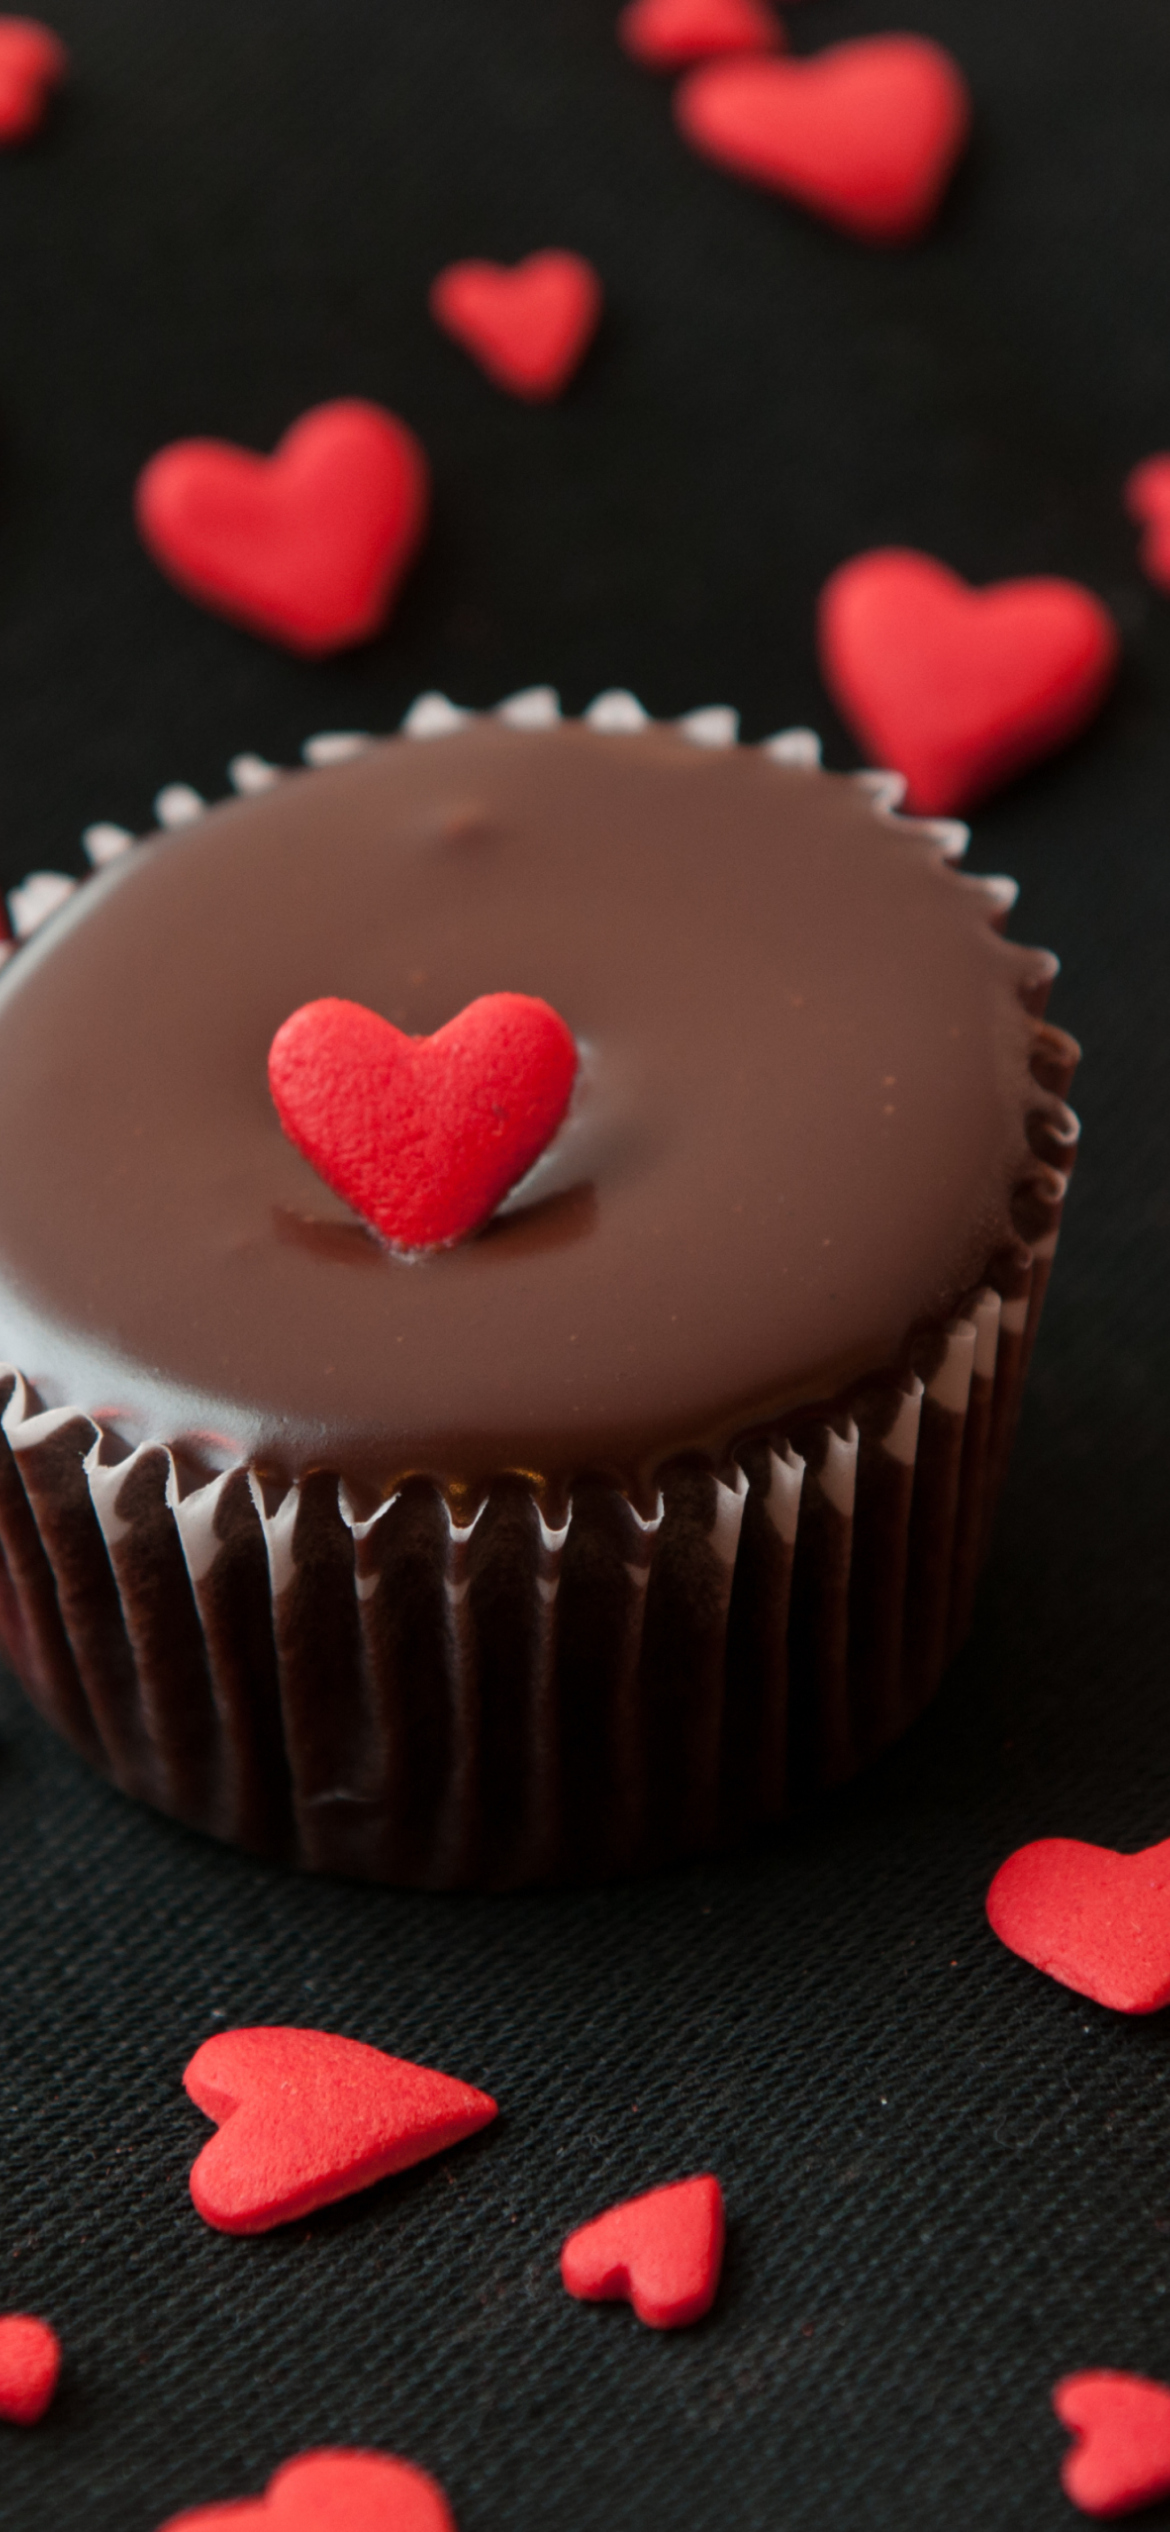 Обои Chocolate Cupcake With Red Heart 1170x2532